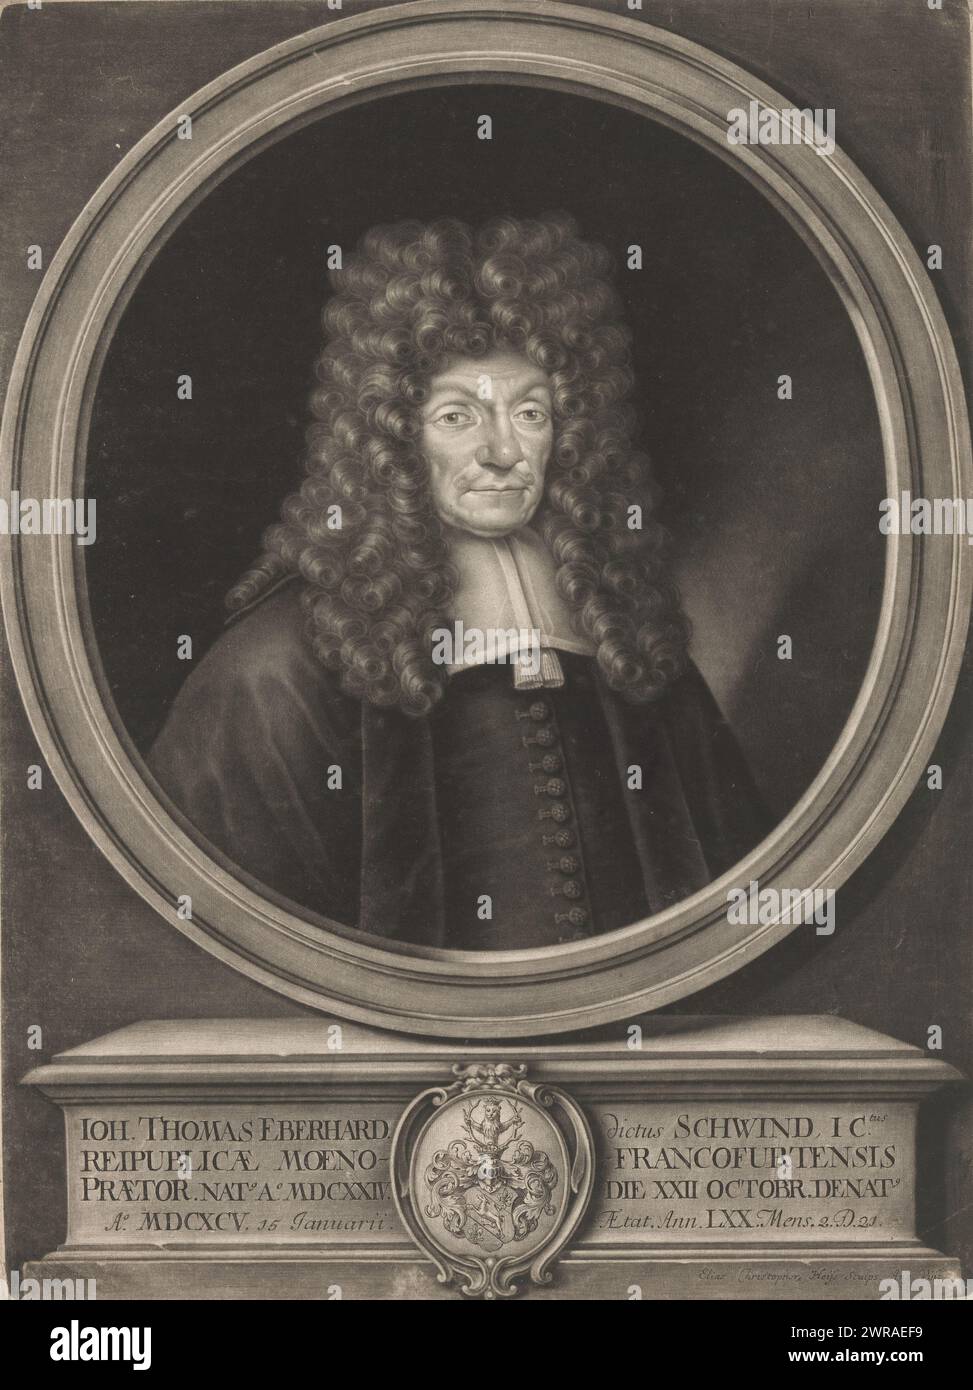 Ritratto di Johann Thomas Eberhard, stampatore: Elias Christopf Heiss, Augusta, 1695 - 1731, carta, incisione, altezza 394 mm x larghezza 296 mm, stampa Foto Stock